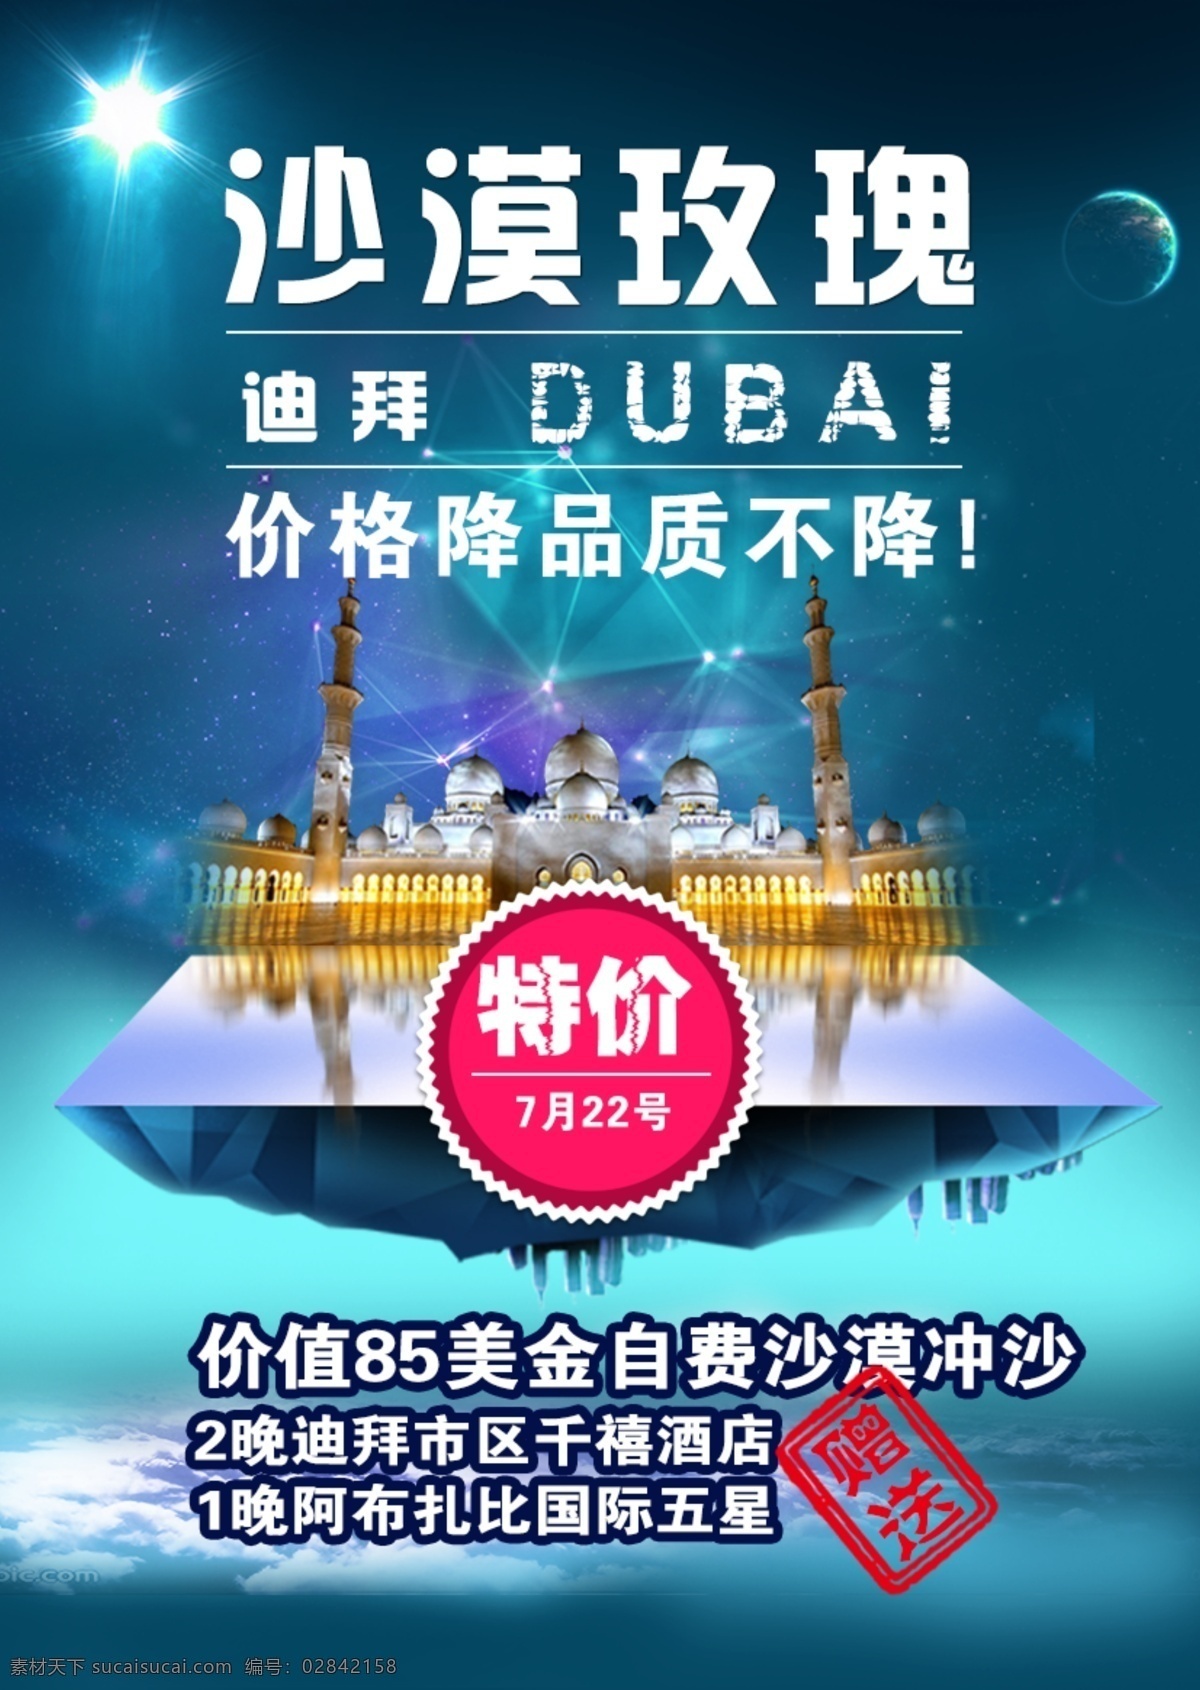 迪拜旅游海报 迪拜 阿联酋 旅游 海报 扎伊德清真寺 星空